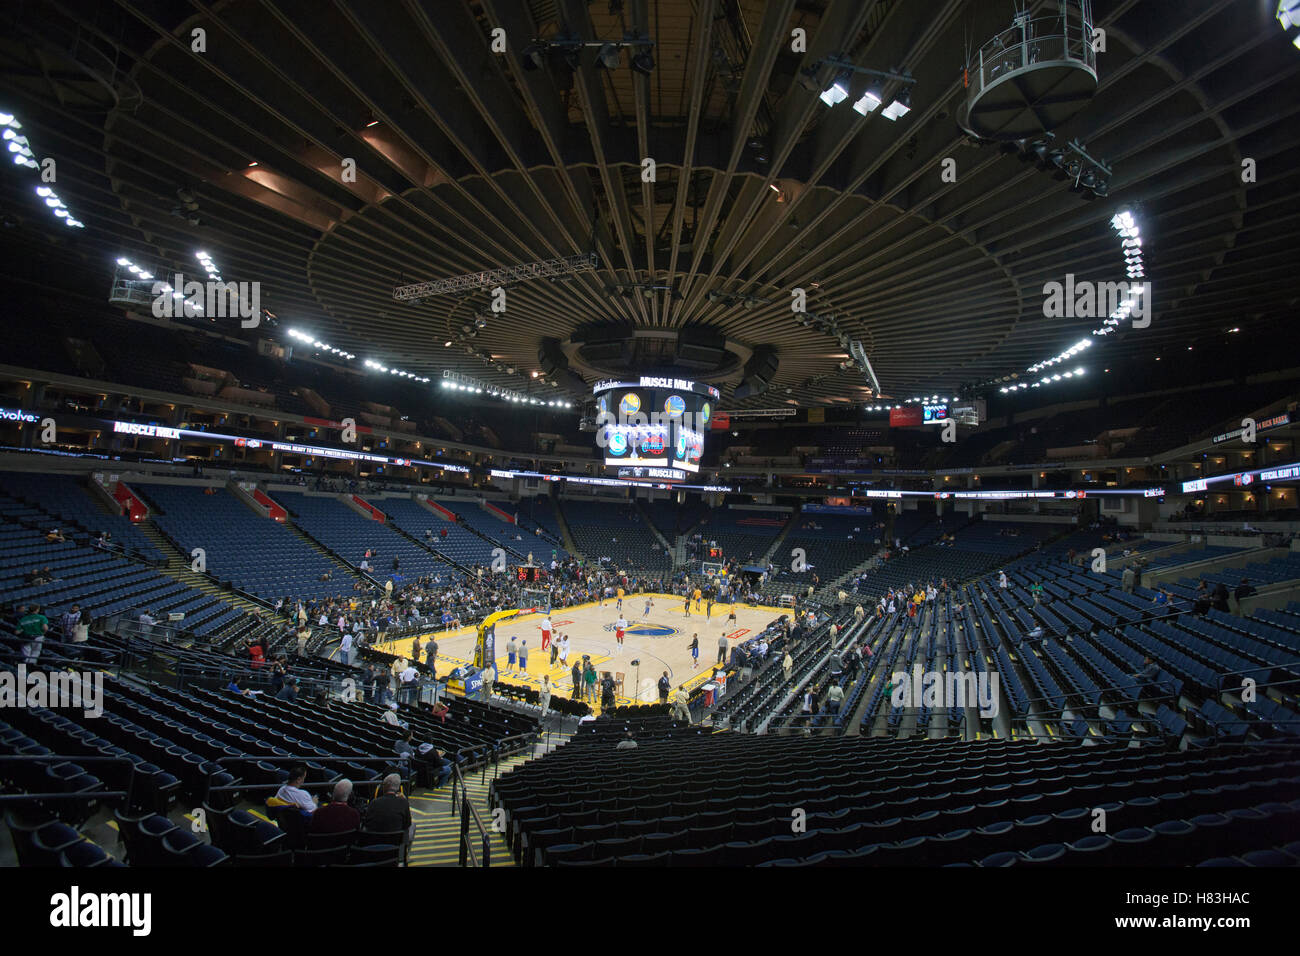 Oktober 29, 2010; Oakland, Ca, USA; allgemeine Ansicht der Oracle Arena vor dem Spiel zwischen den Golden State Warriors und die Los Angeles Clippers. Stockfoto